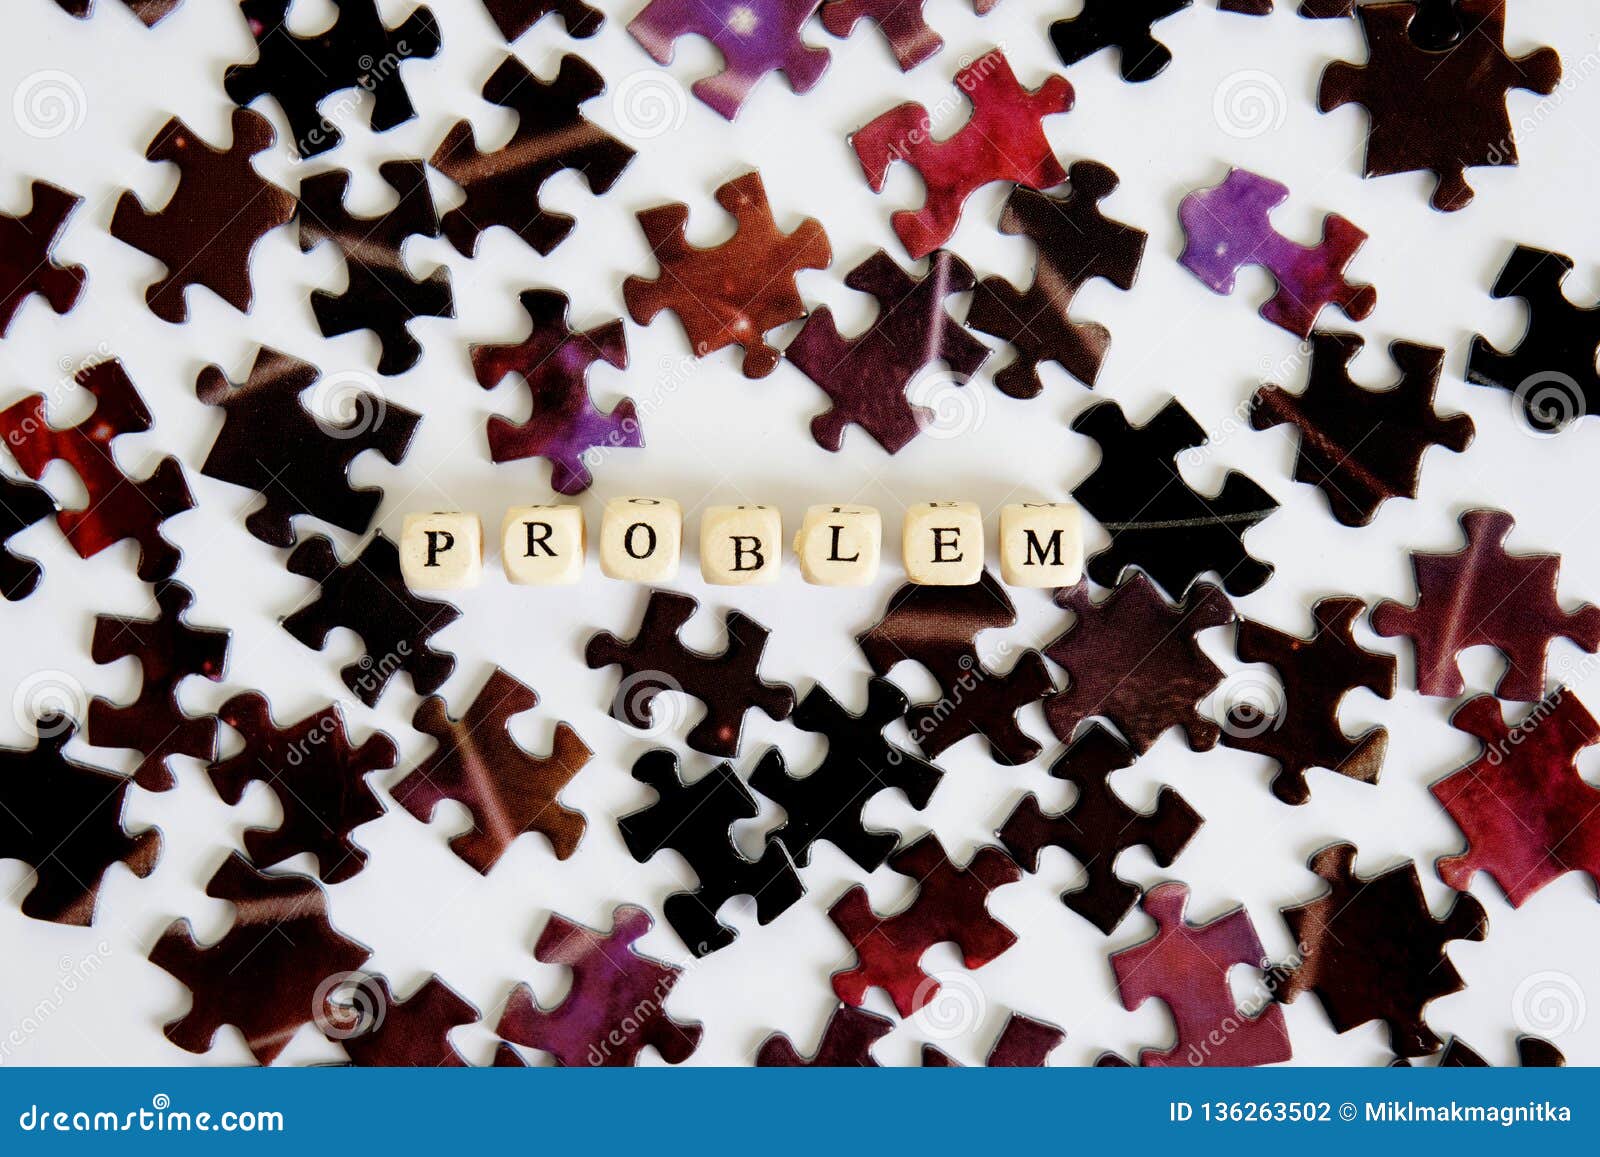 Το πρόβλημα και η λύση του Συγκεντρώνοντας γρίφοι Εύρεση των λύσεων στα  σύνθετα προβλήματα Ευκαιρίες από το πρόβλημα Στοκ Εικόνες - εικόνα από :  136263502